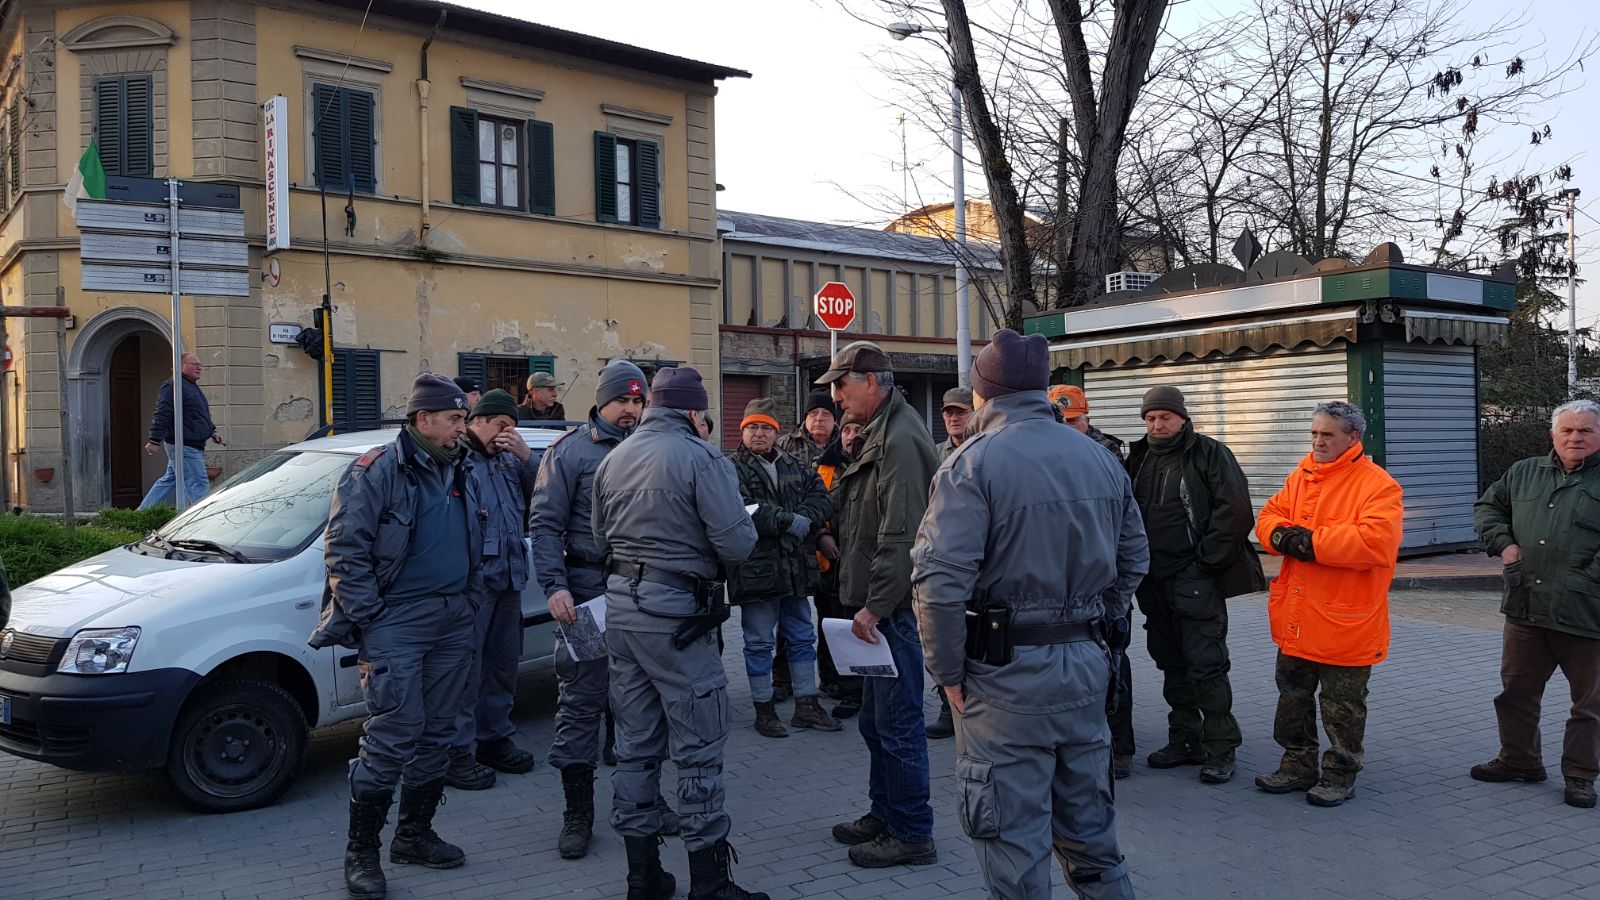 La riunione della Polizia provinciale della Citt Metropolitana prima dell'operazione (foto di Domenico Costanzo, Ufficio Stampa)